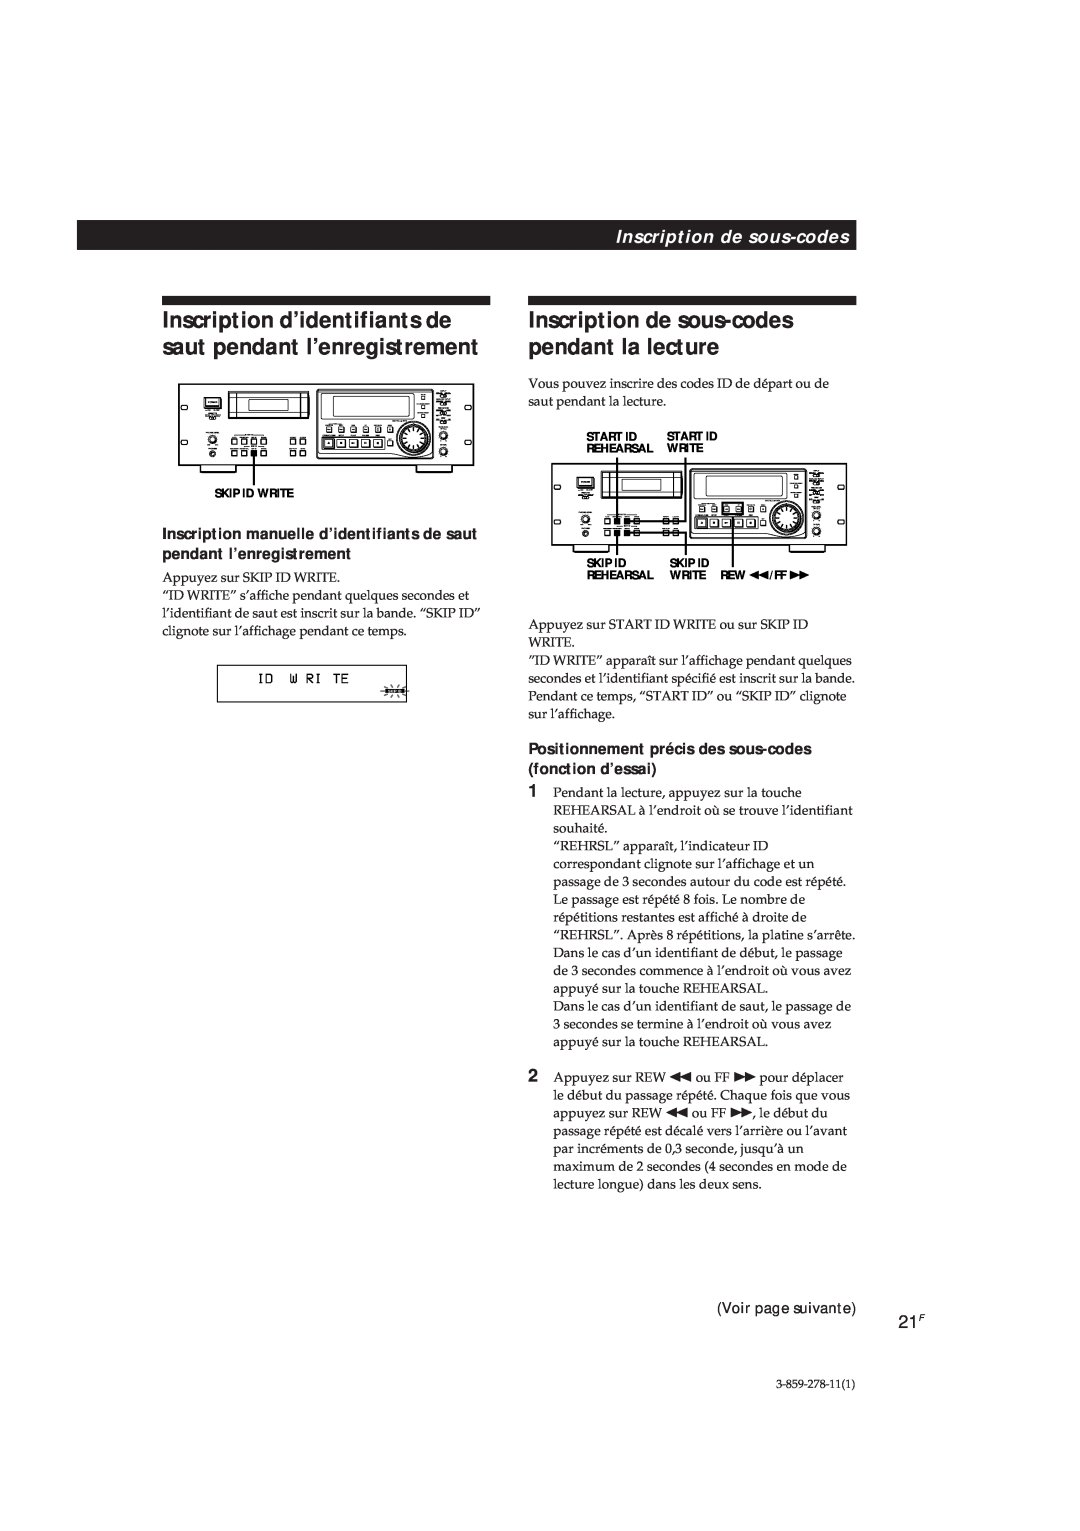 Sony PCM-R700, PCM-R500 manual Inscription de sous-codespendant la lecture 